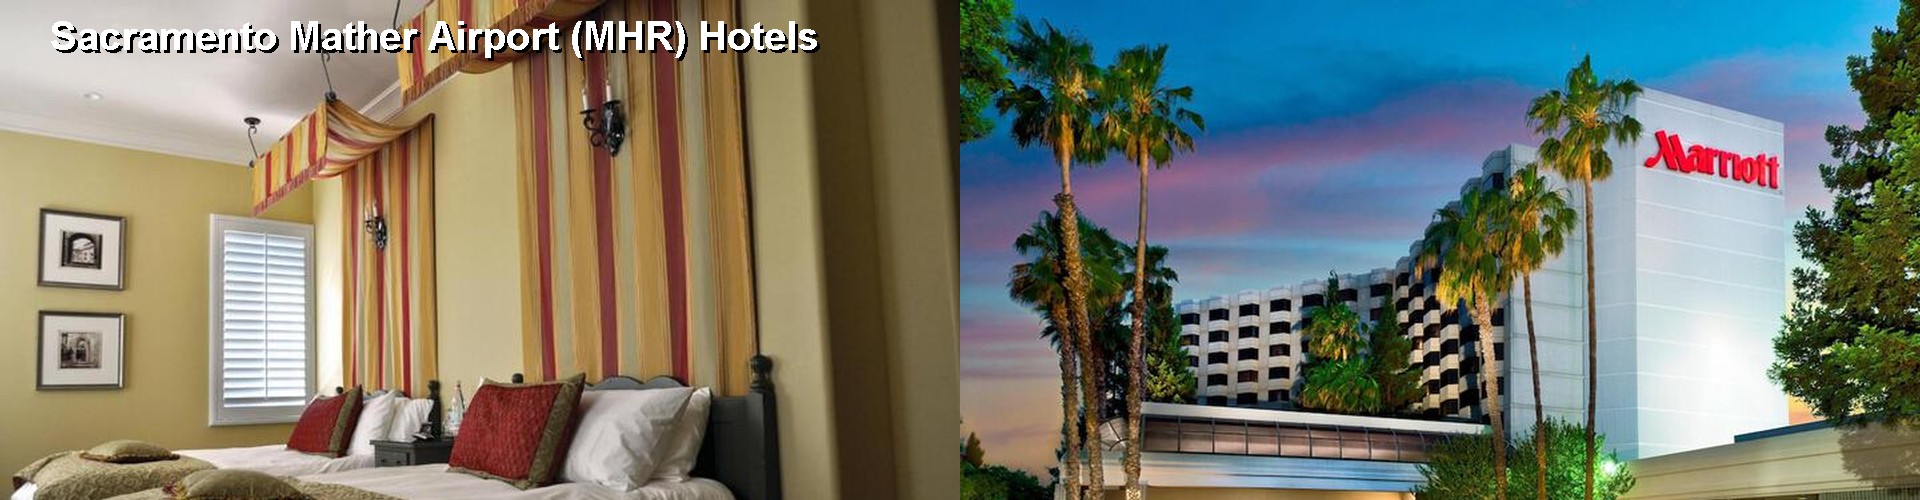 5 Best Hotels near Sacramento Mather Airport (MHR)